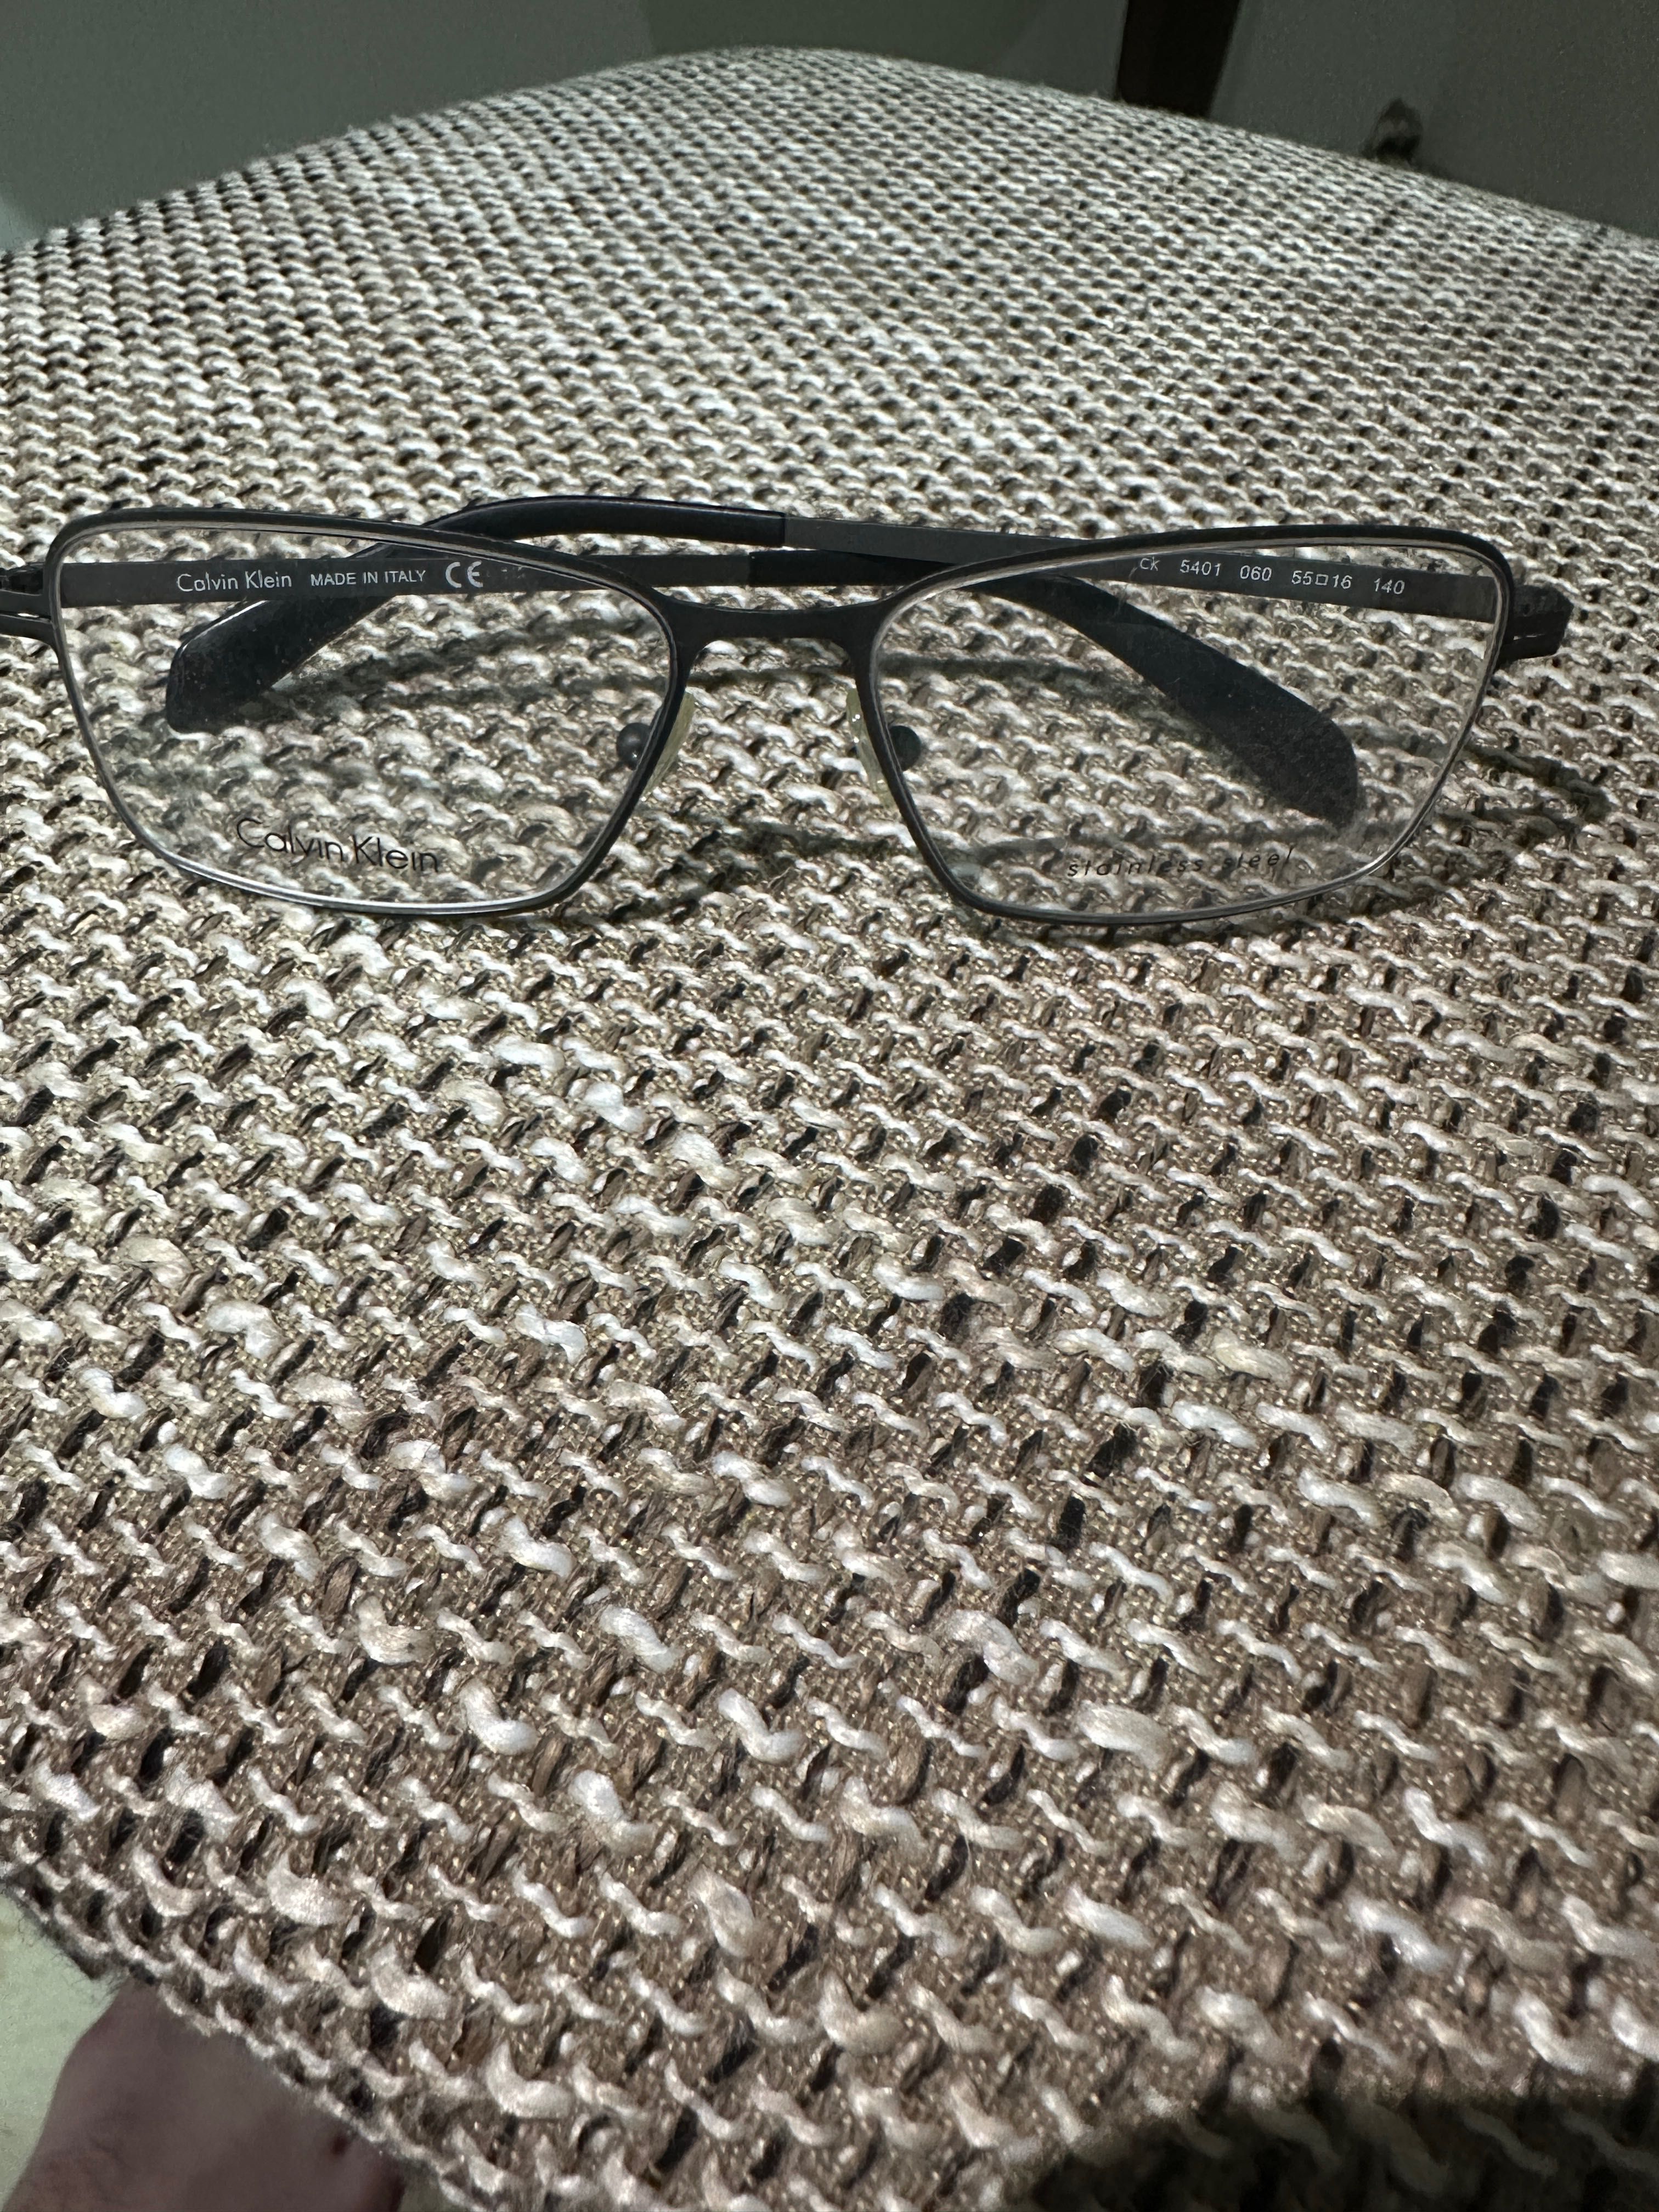 Rame ochelari originali noi sau putin uzati